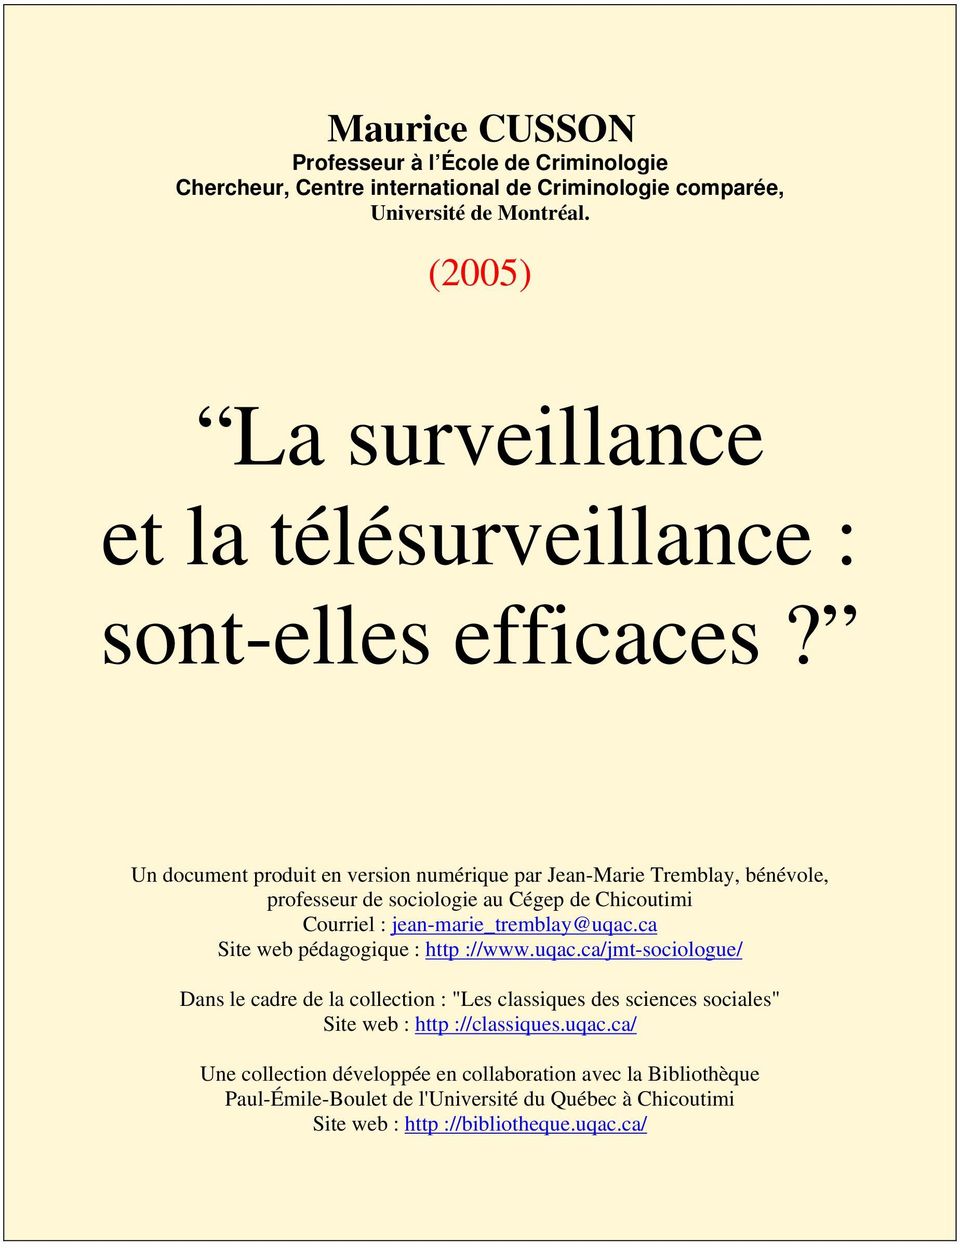 Un document produit en version numérique par Jean-Marie Tremblay, bénévole, professeur de sociologie au Cégep de Chicoutimi Courriel : jean-marie_tremblay@uqac.